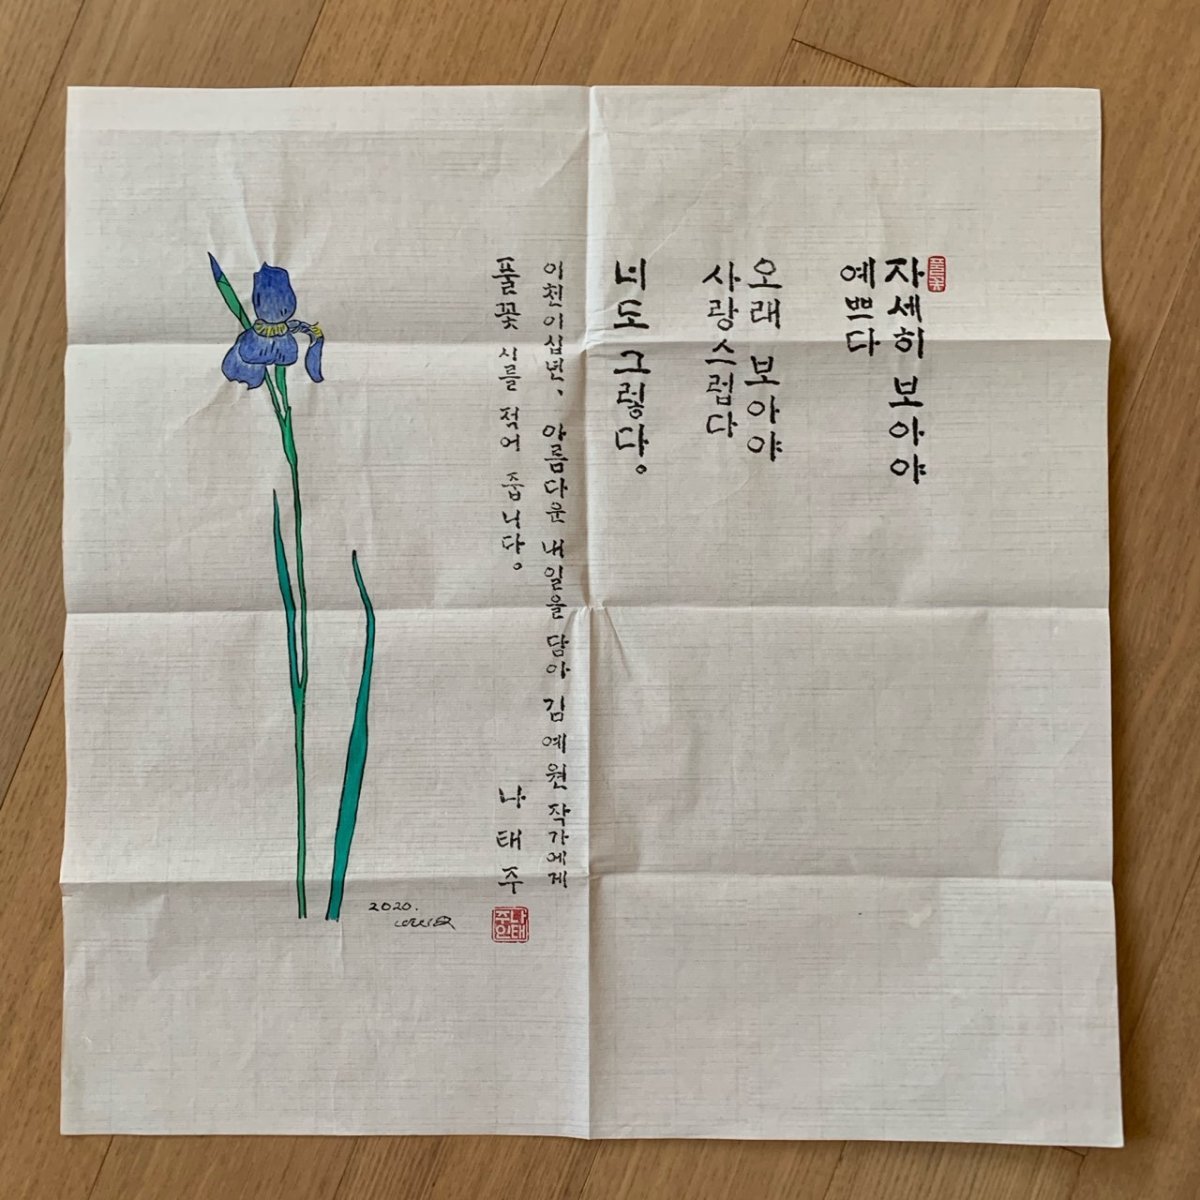 나태주 시인이 김예원 작가에게 선물한 자신의 대표작 ‘풀꽃’이 담긴 서화(書畵). 자화상 제공